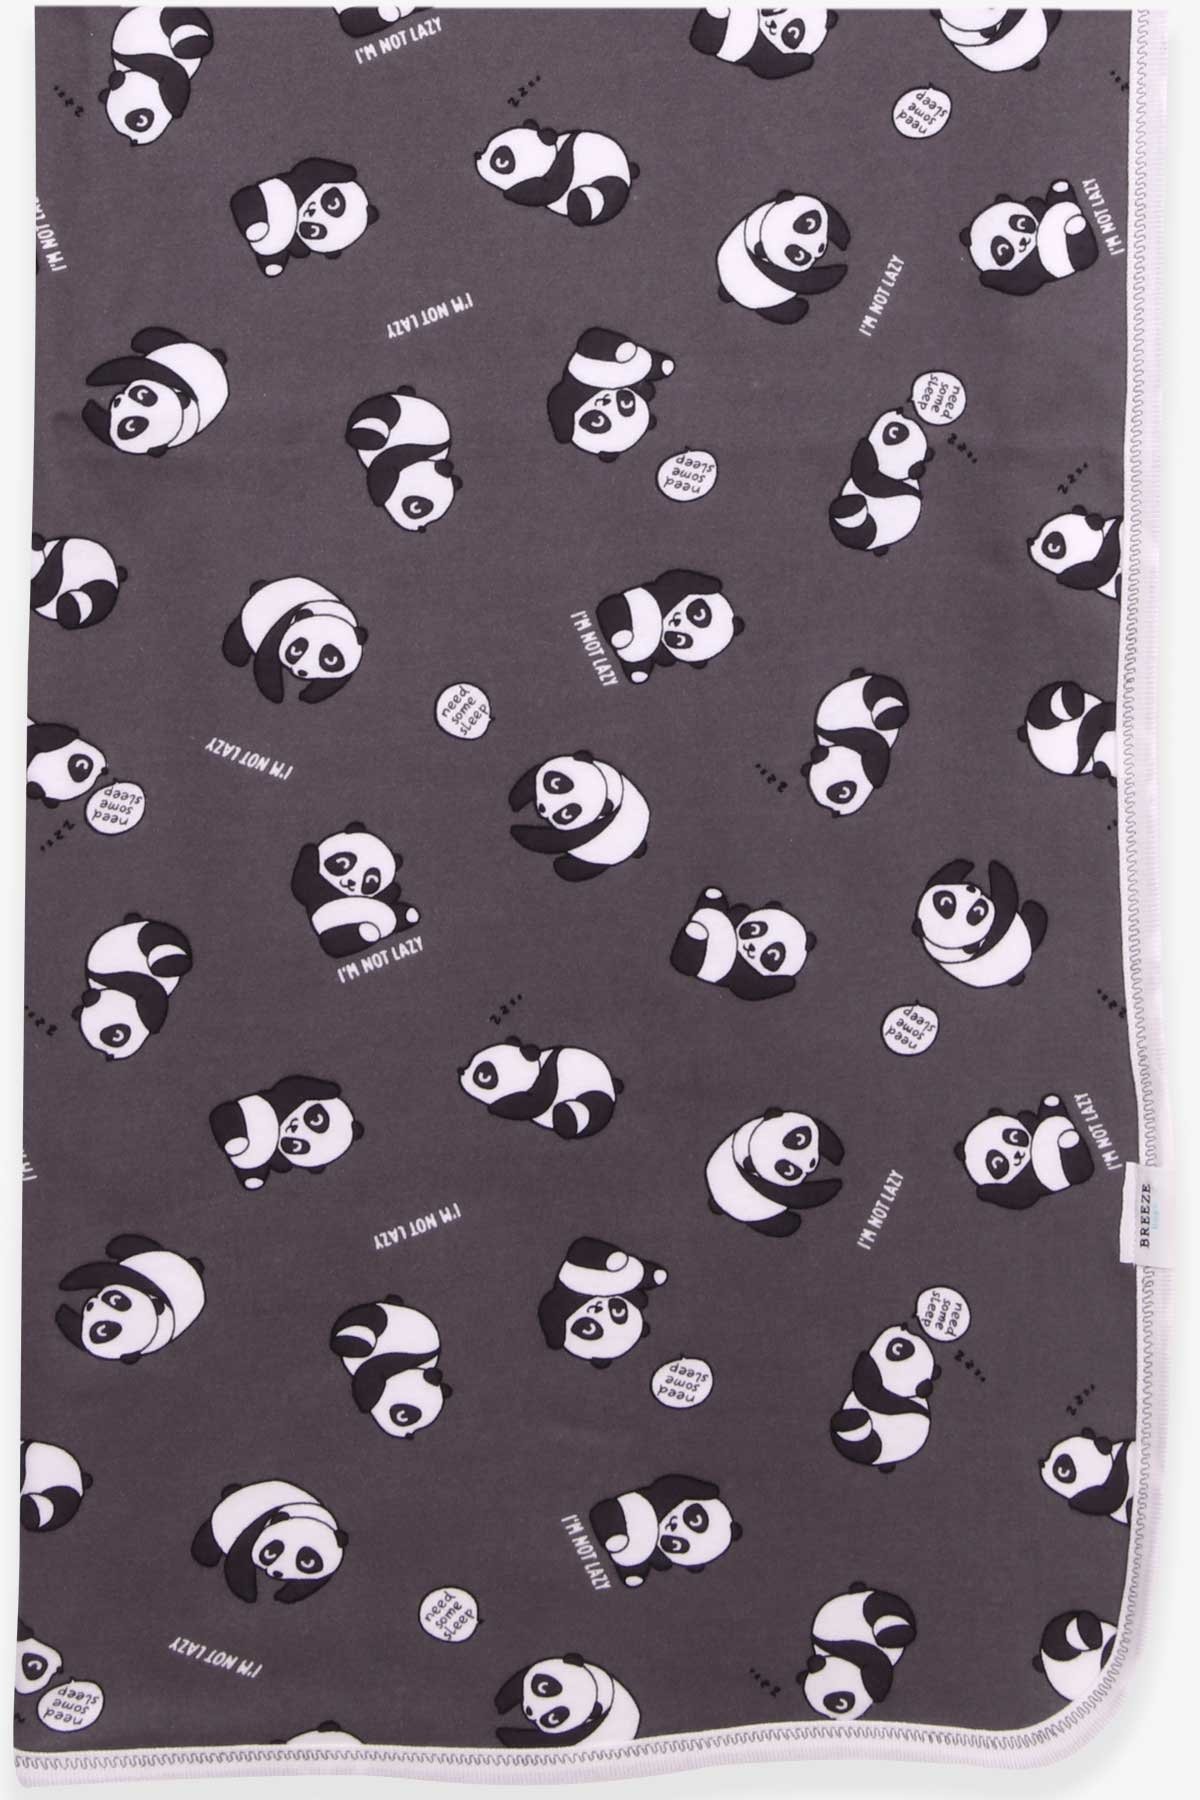 Yenidoğan Bebek Battaniyesi Panda Desenli Füme (75 x 85 cm) - BREEZE